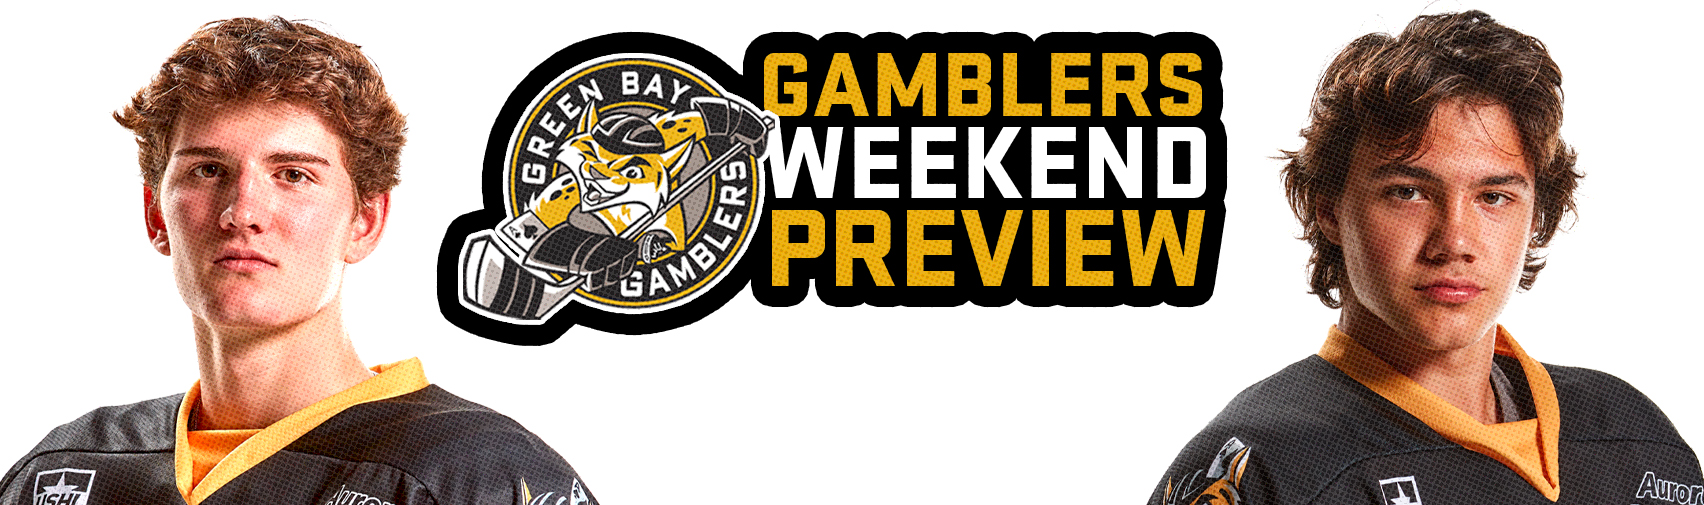 gamblers-weekend-preview-11-4-11-5